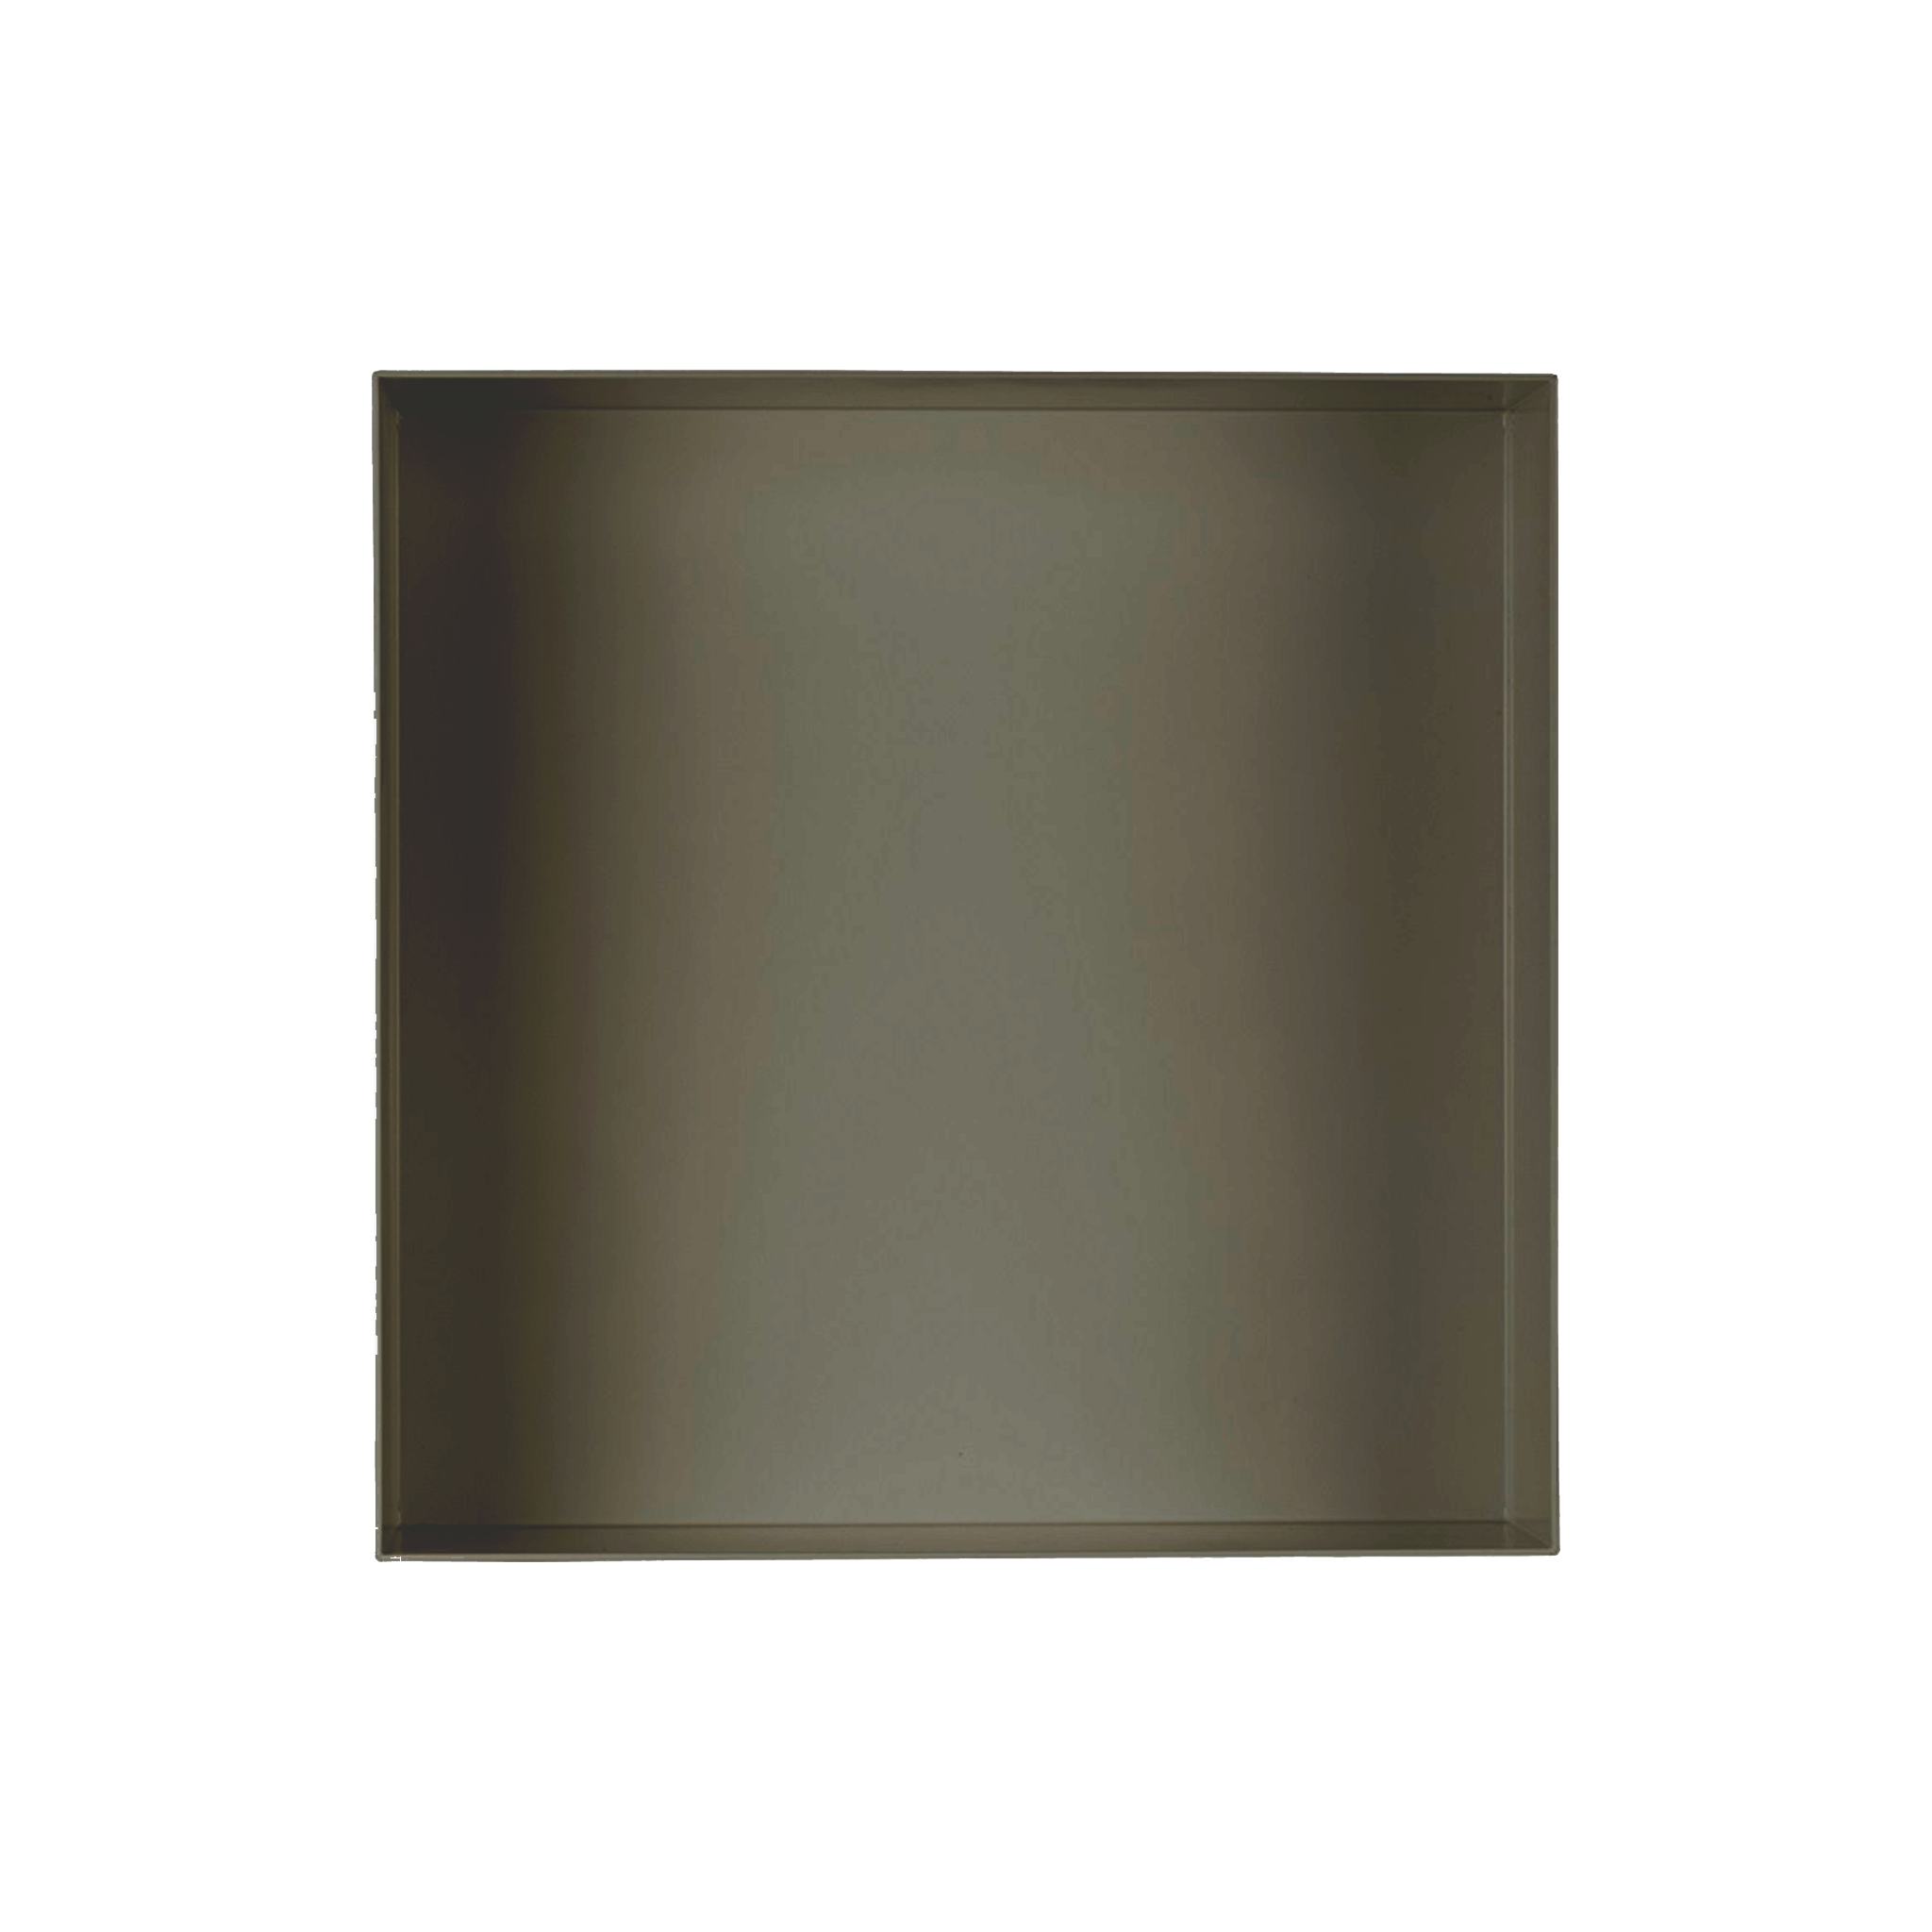 Valli Home – V-Box, Nicchia portaoggetti in Metallo smaltato color Grigio Scuro KK71, Misura 30X30 P. 10 cm – V-BOX.MLLO.30X30.71